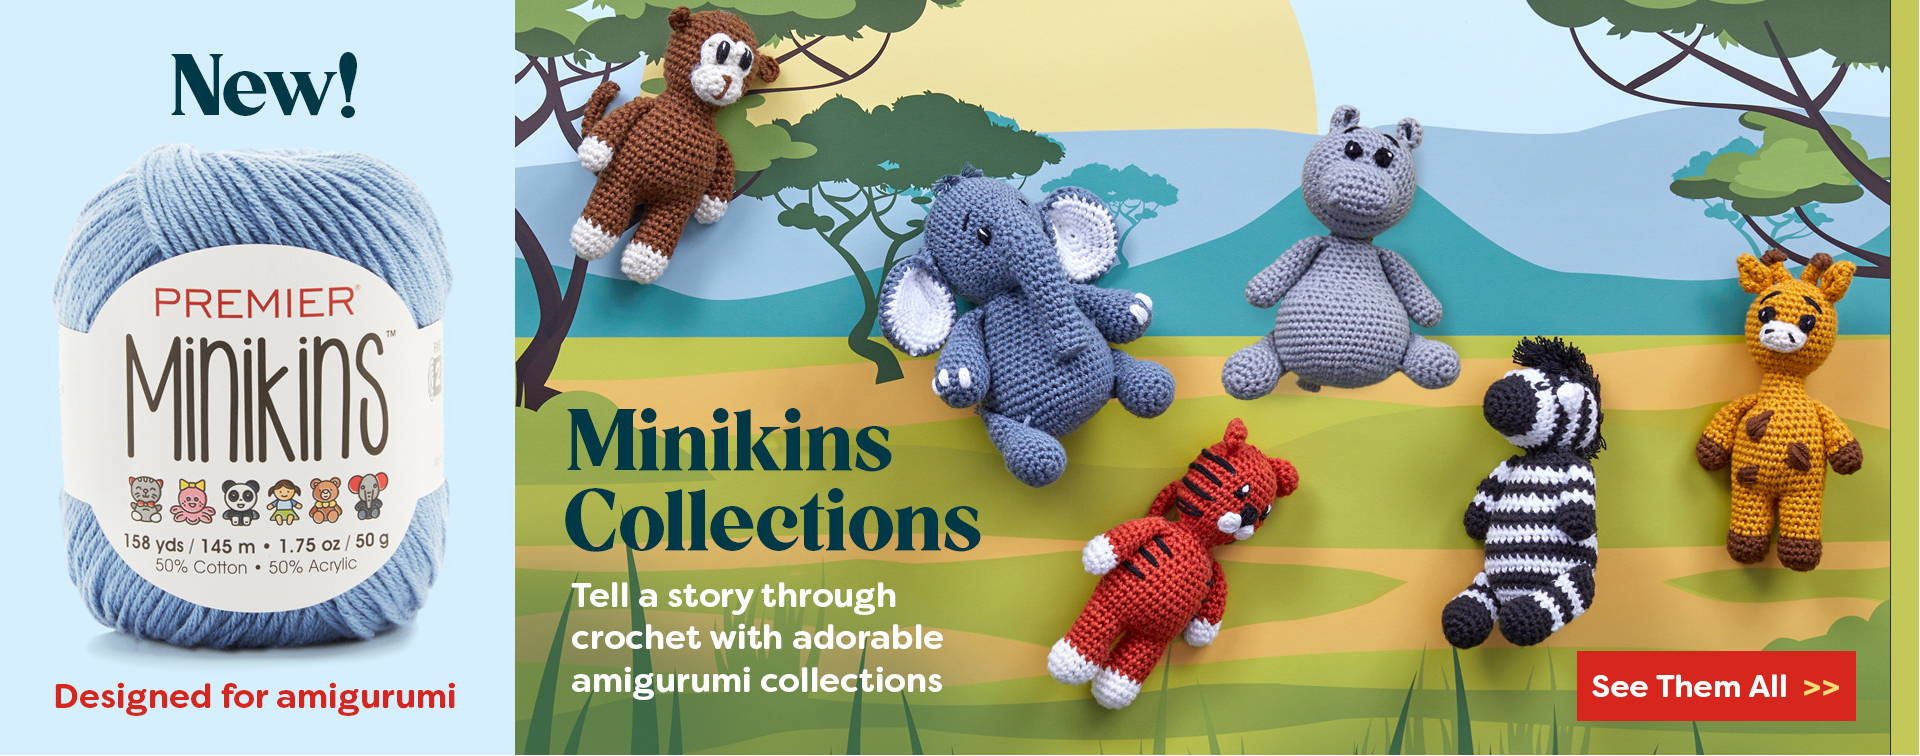 New Premier Minikins Yarn & KIts. Shop Them All>>